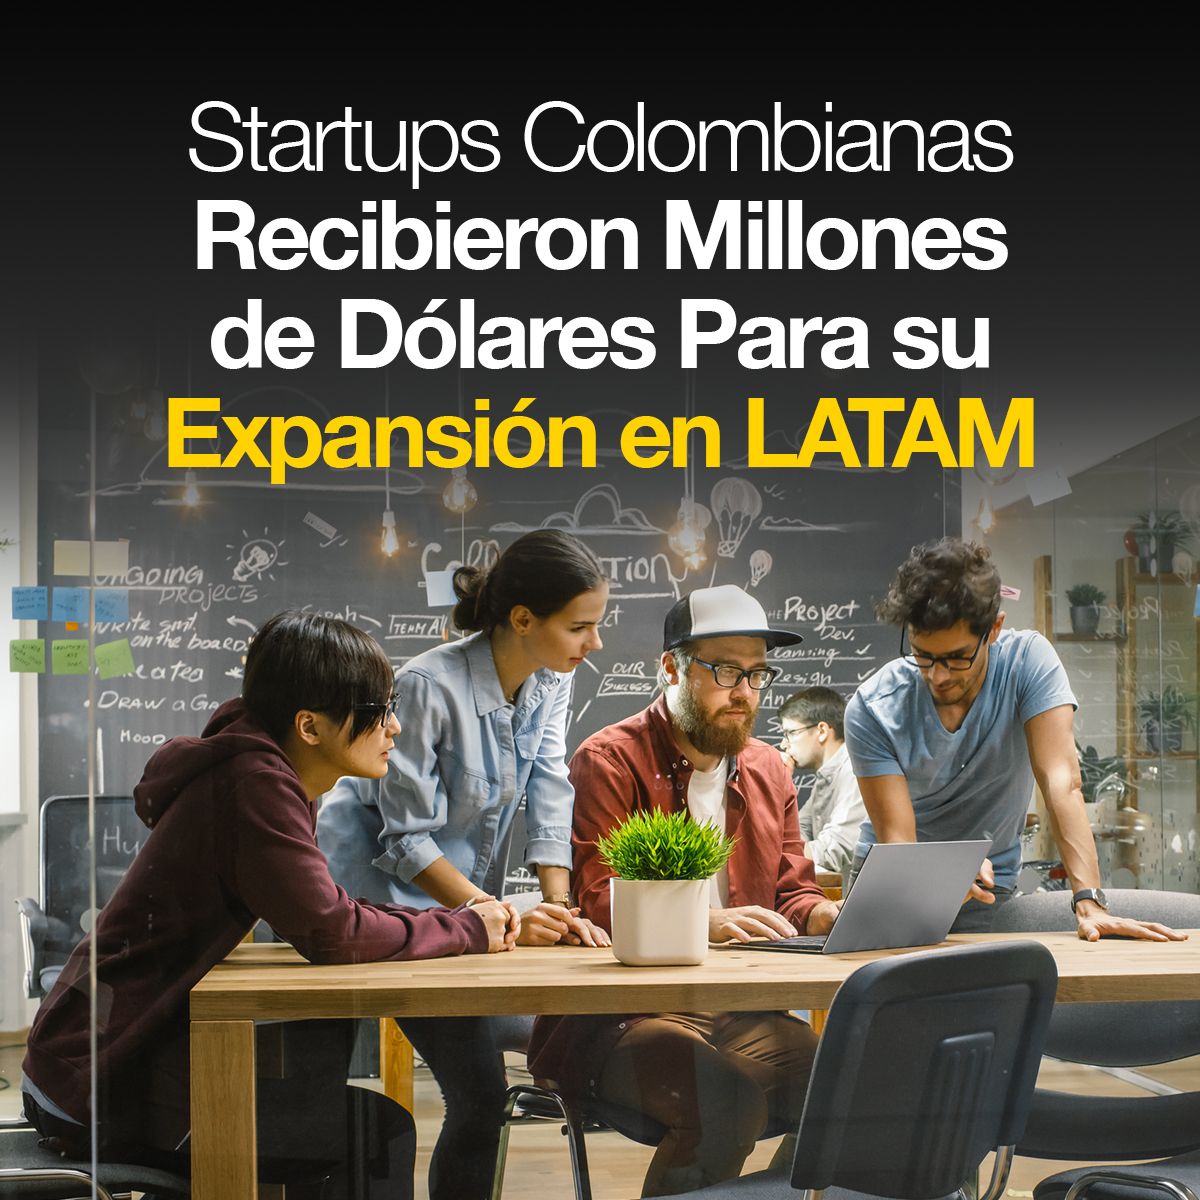 Startups Colombianas Recibieron Millones de Dólares Para su Expansión en LATAM